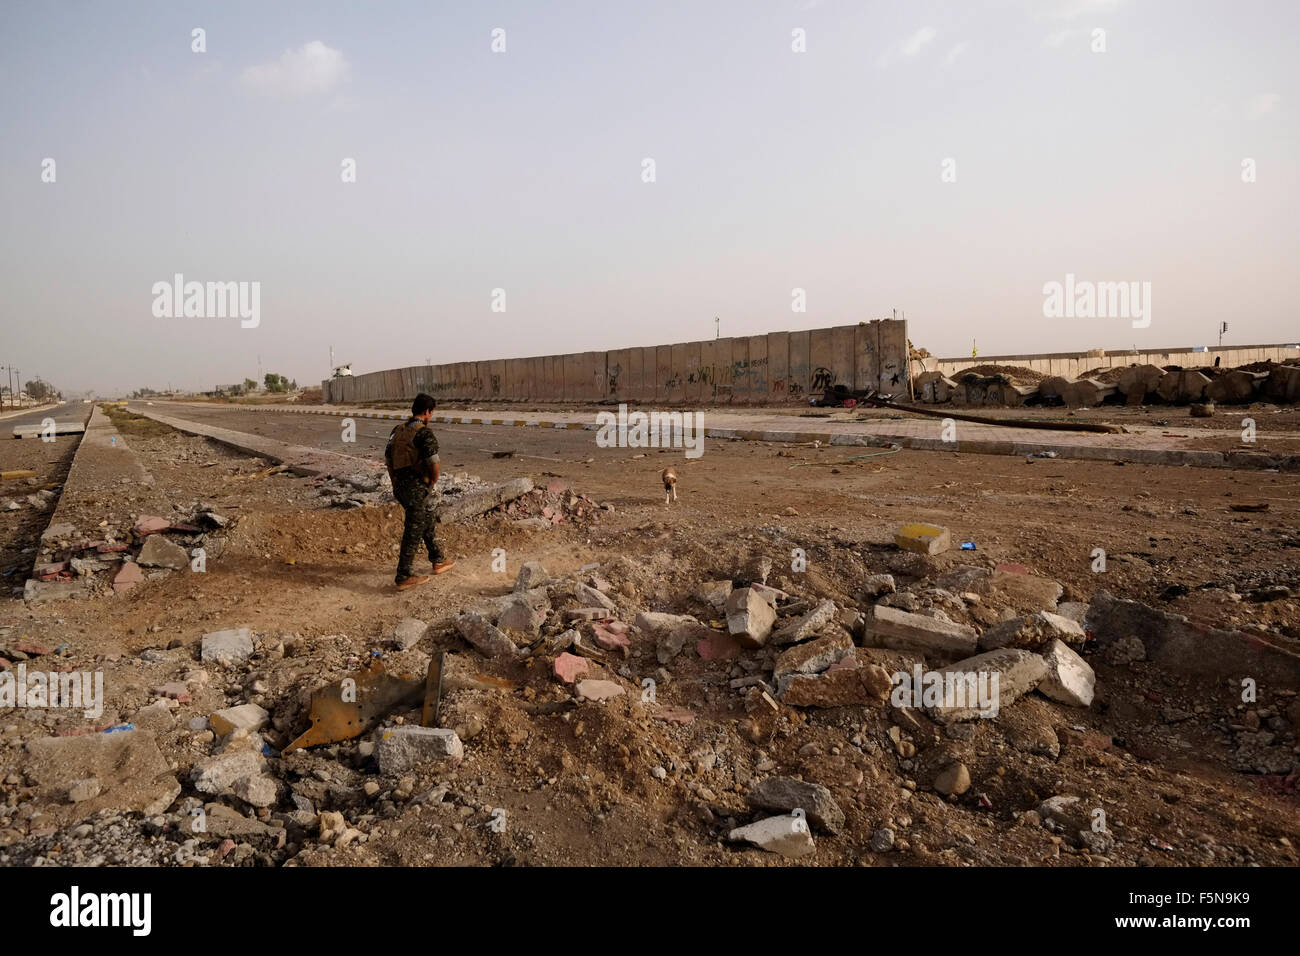 Ein kurdischer Kämpfer geht durch Schutt, der durch heftige Kämpfe verursacht wird Zwischen IS-Aktivisten und kurdischen Kämpfern in Rabia am Grenzübergang Zwischen Syrien und dem Irak in der Nähe der Stadt Al-Yarubiyah in Syrien Stockfoto